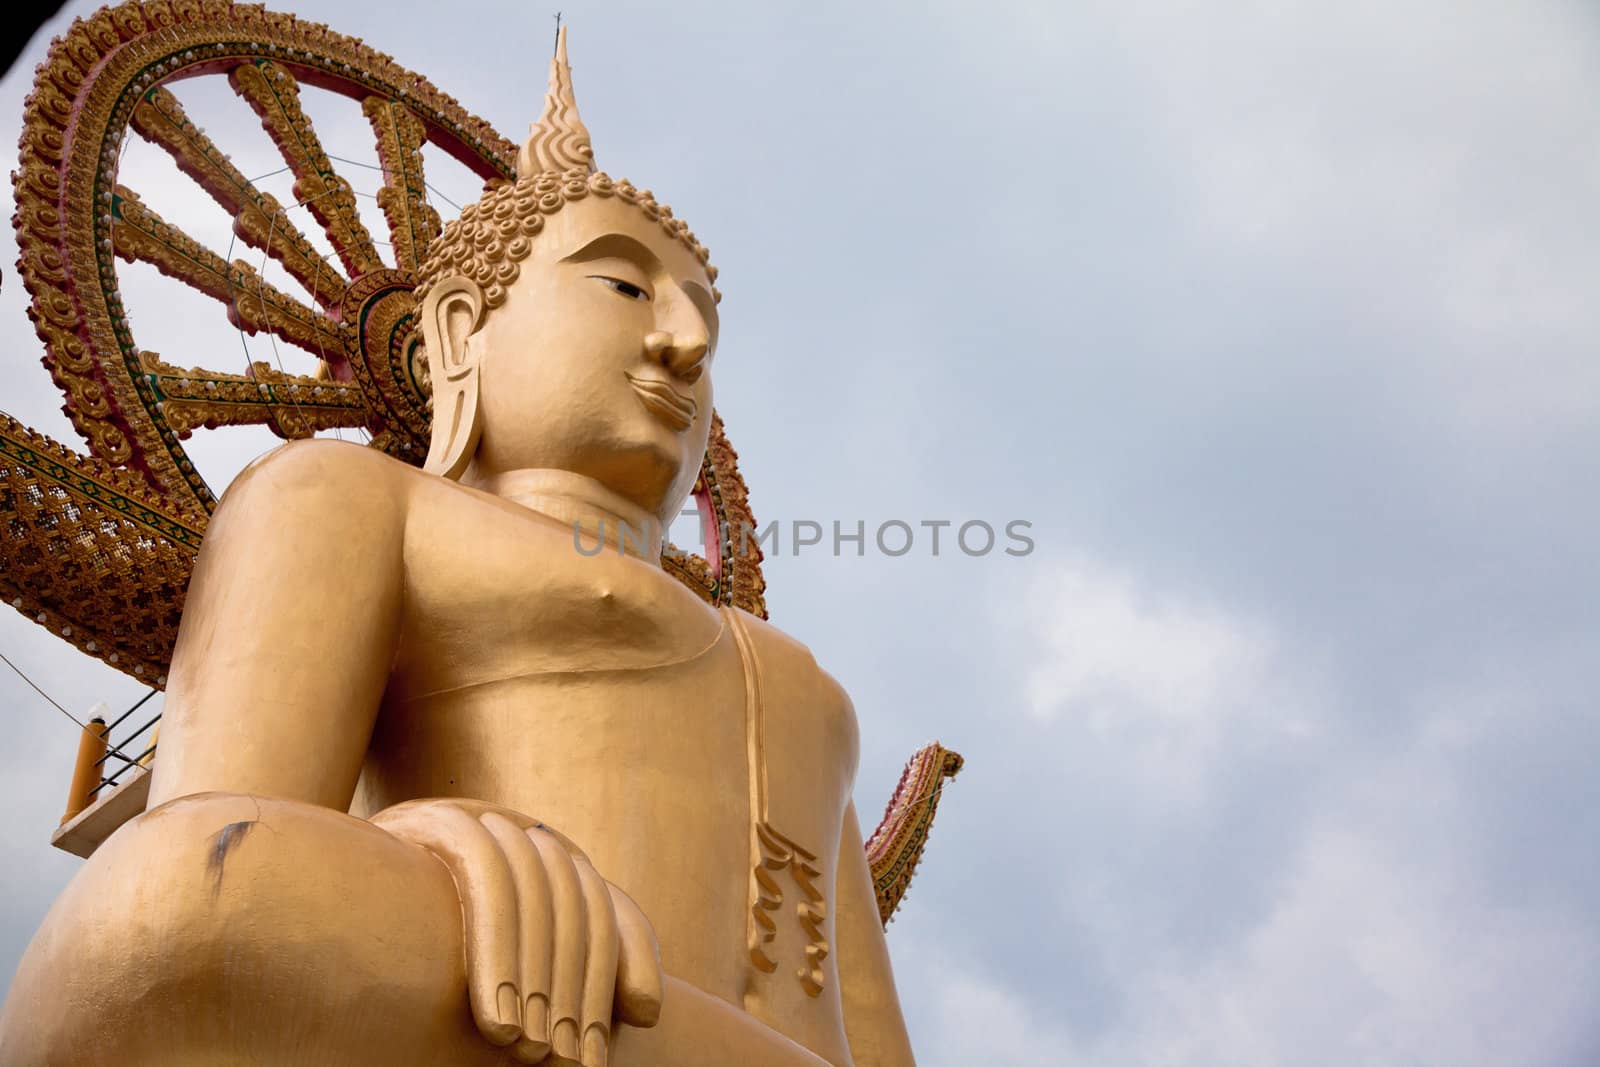 Big Buddha by haiderazim